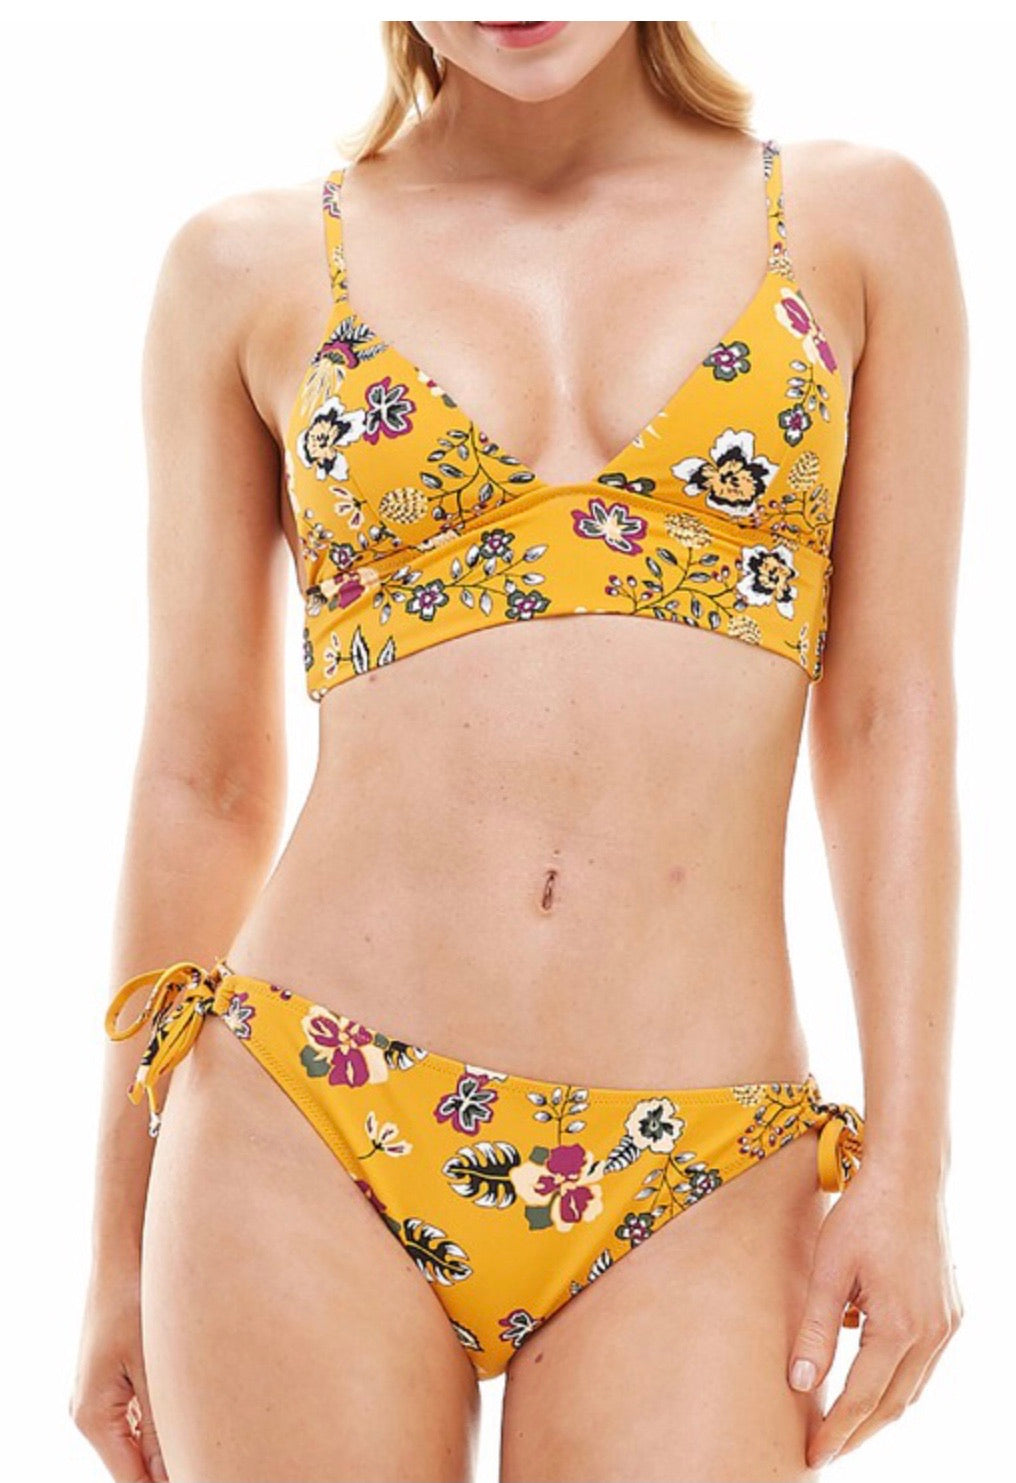 Envya floral cross back style bikini